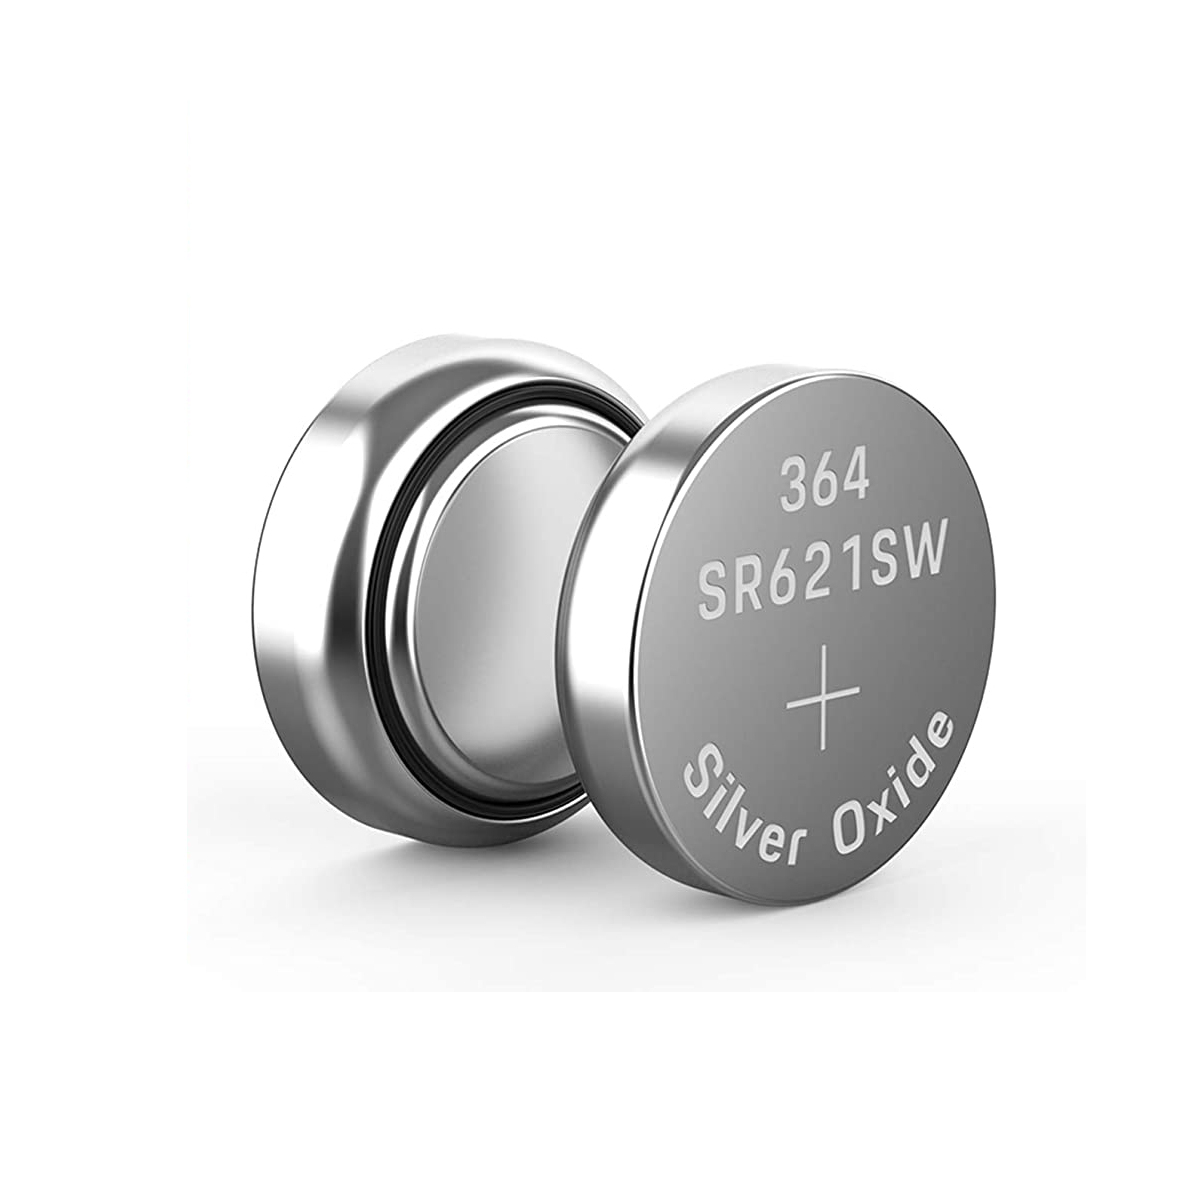 SR621SW 364 1.55V Battery